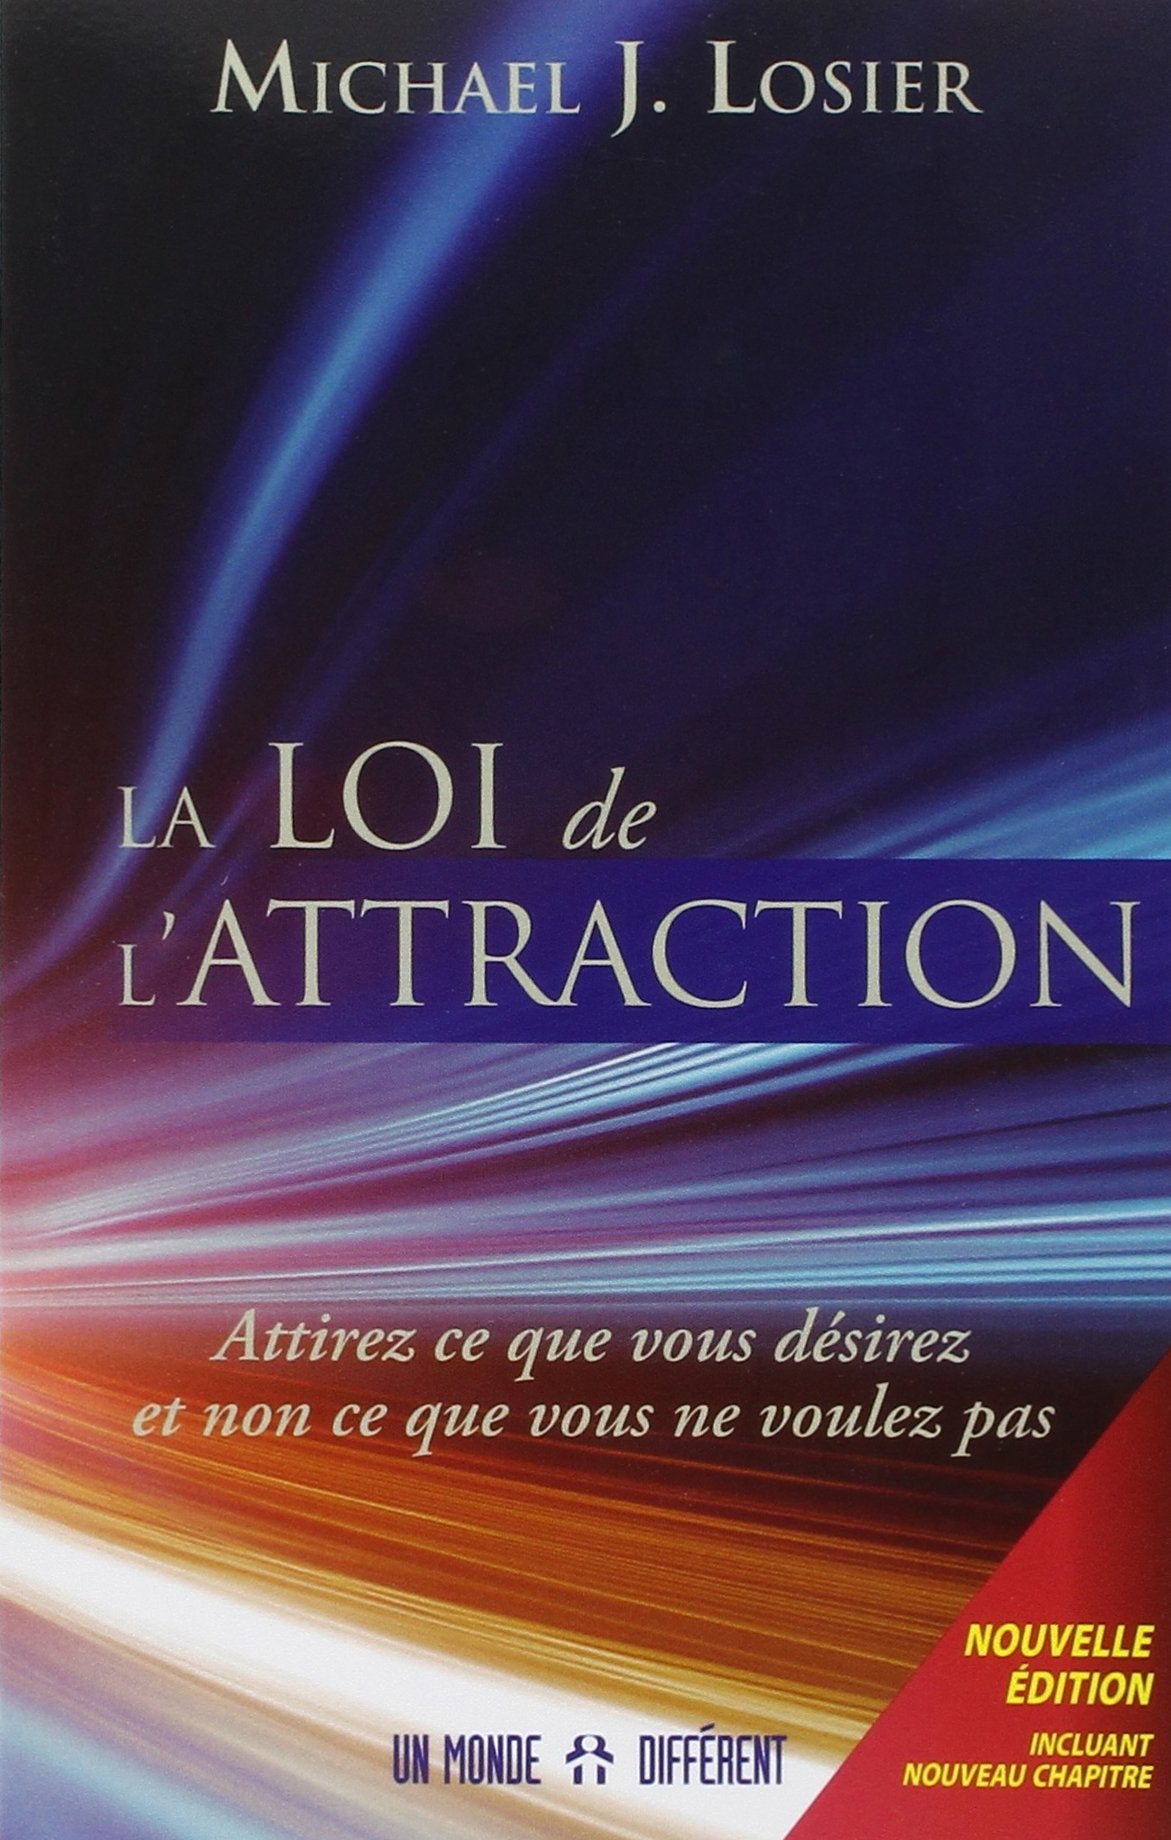 Livre ISBN 289225843X La loi de l'attraction : attirez ce que vous désirez et non ce que vous ne voulez plus (Michael J. Losier)